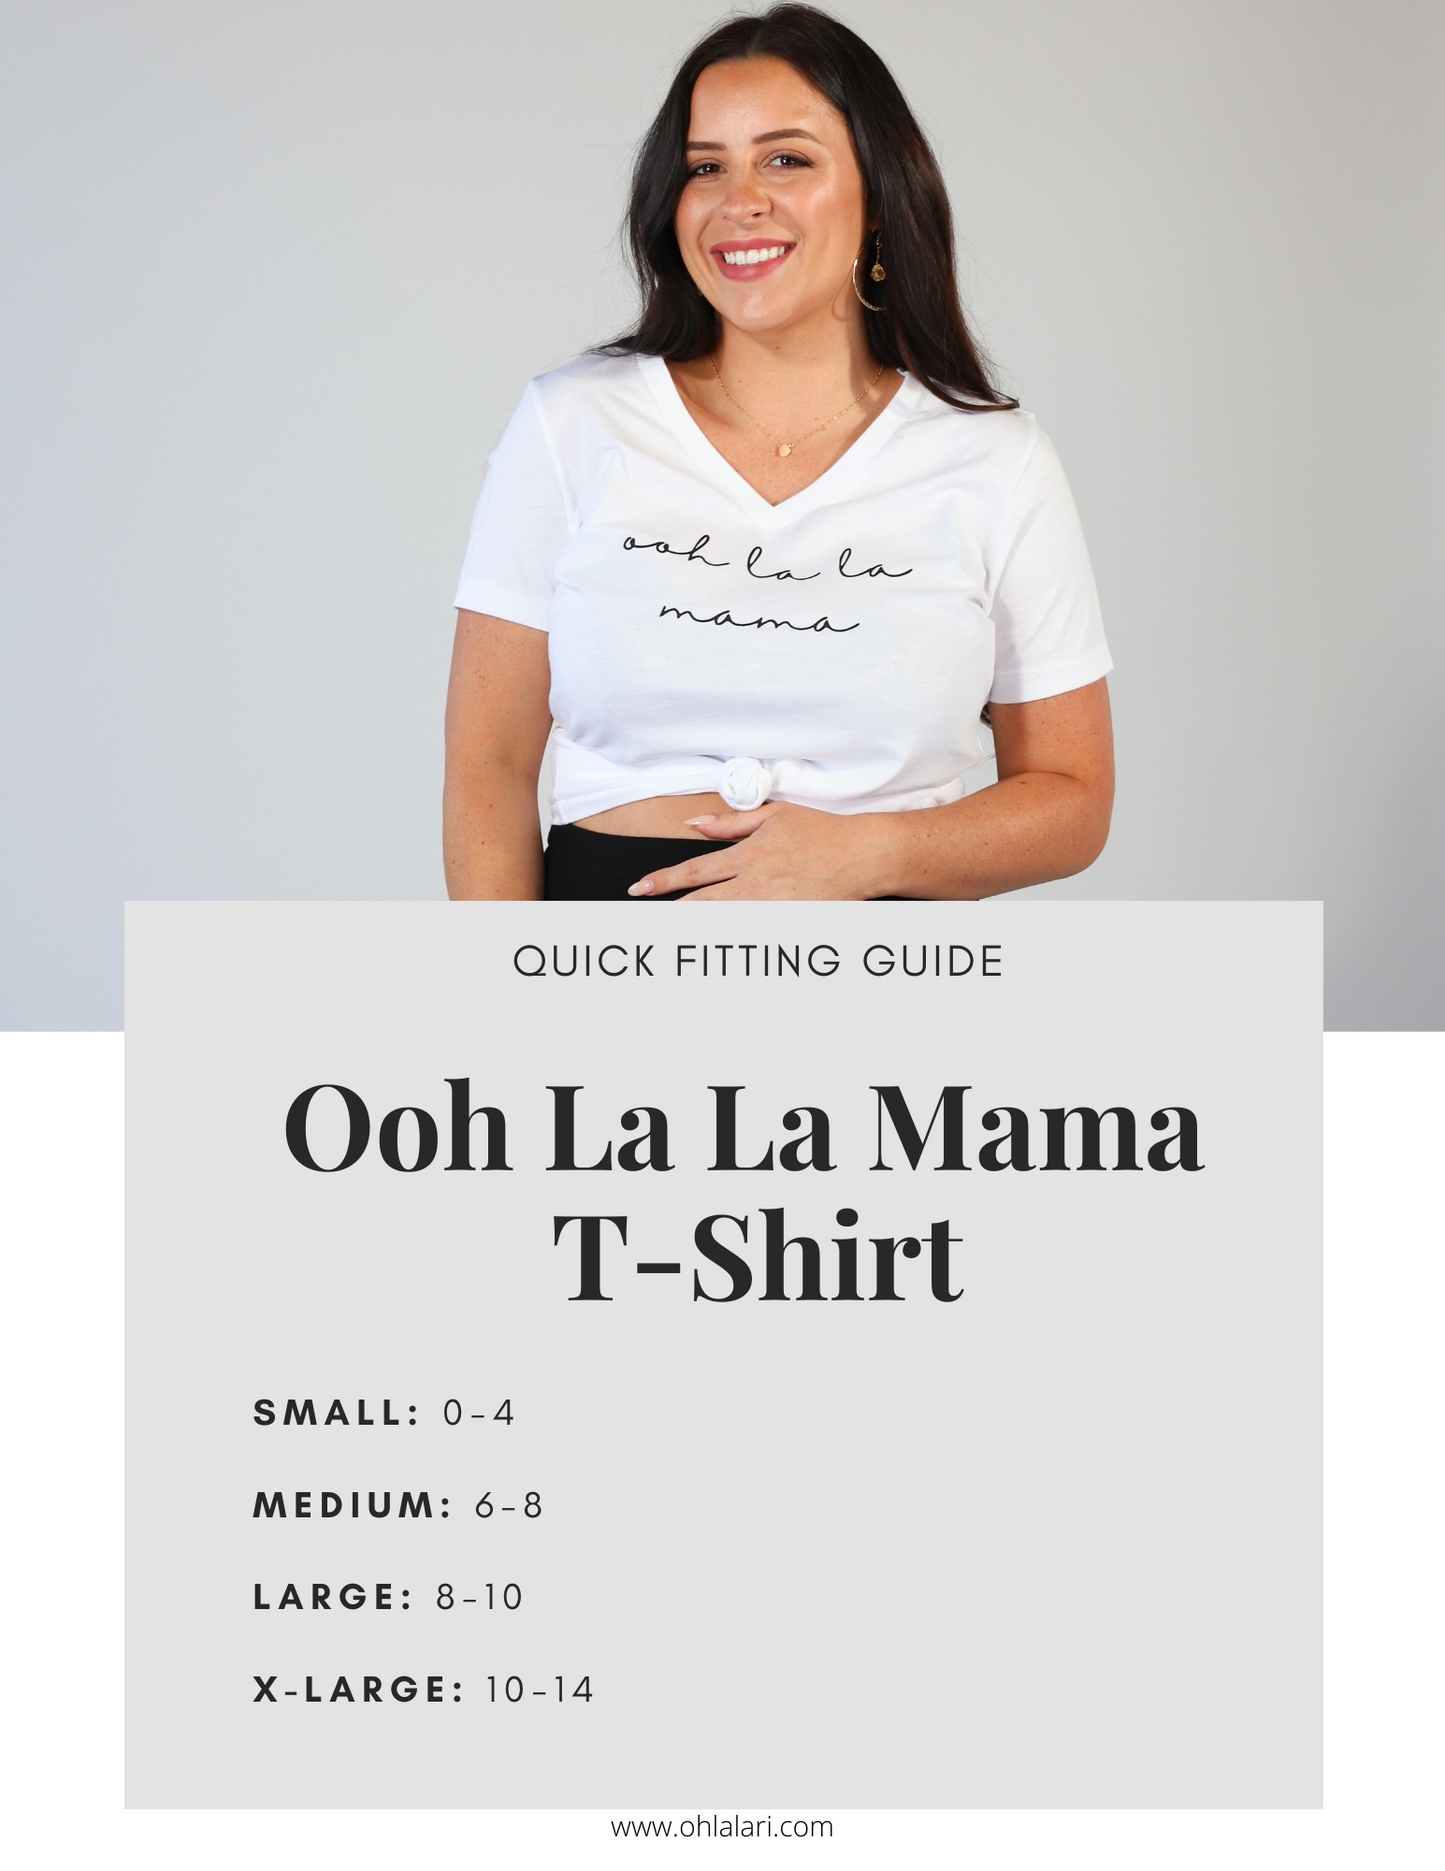 Ooh La La Mama V-Neck T-Shirt